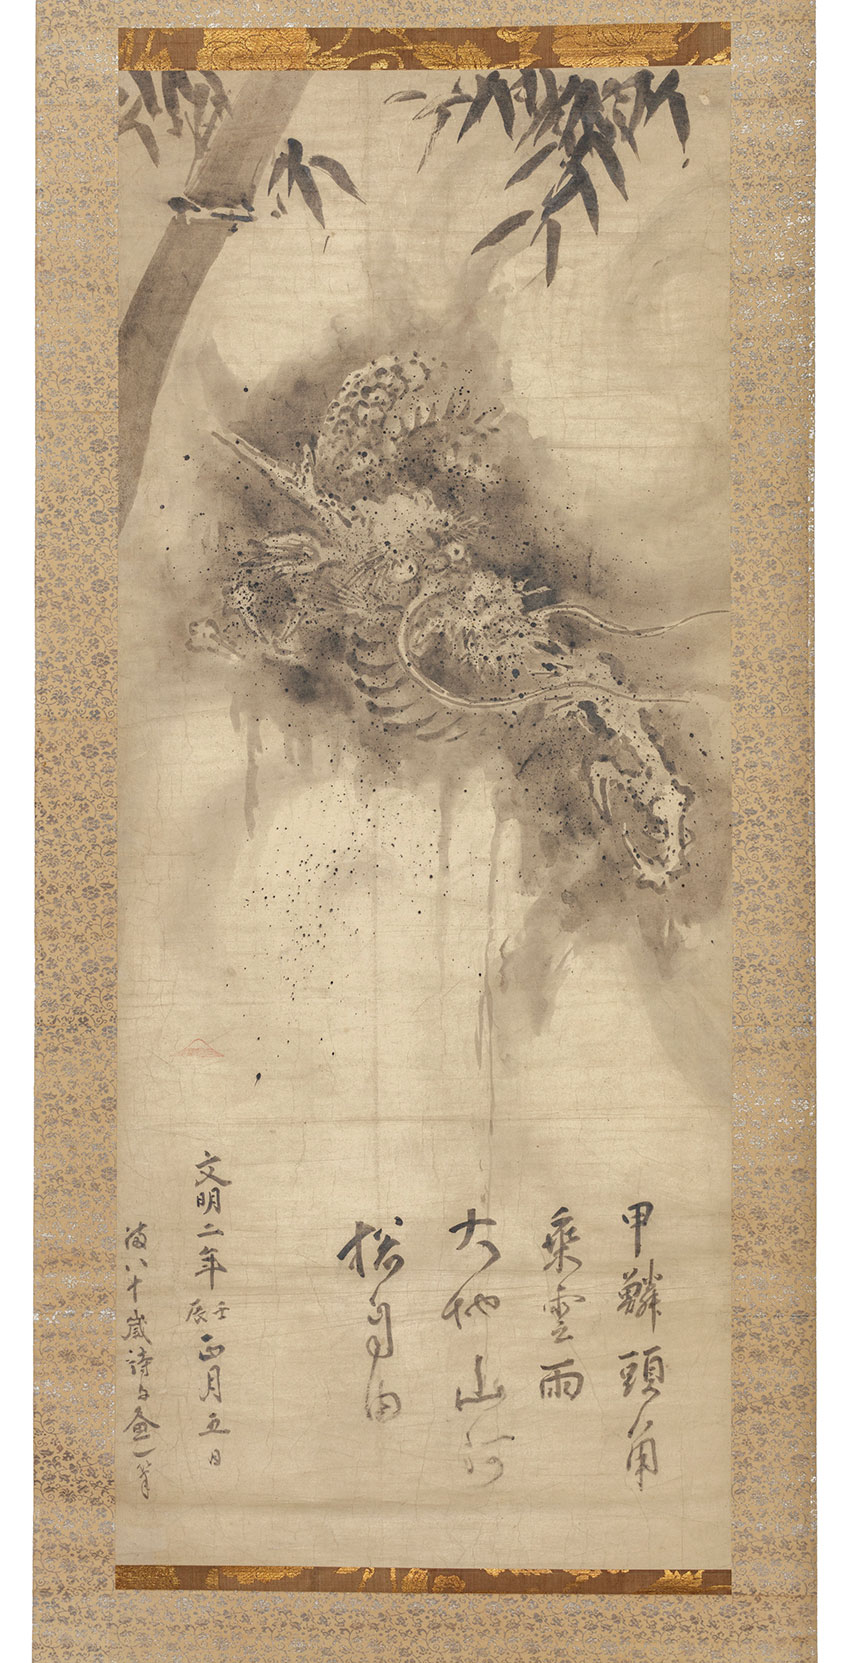 Kanō Tan’yu, Japan 1602 – 1674, Dragon and bamboo after Sesshū Tōyō (1420-1506)c.1625, Edo (Tokyo), hanging scroll, ink on paper